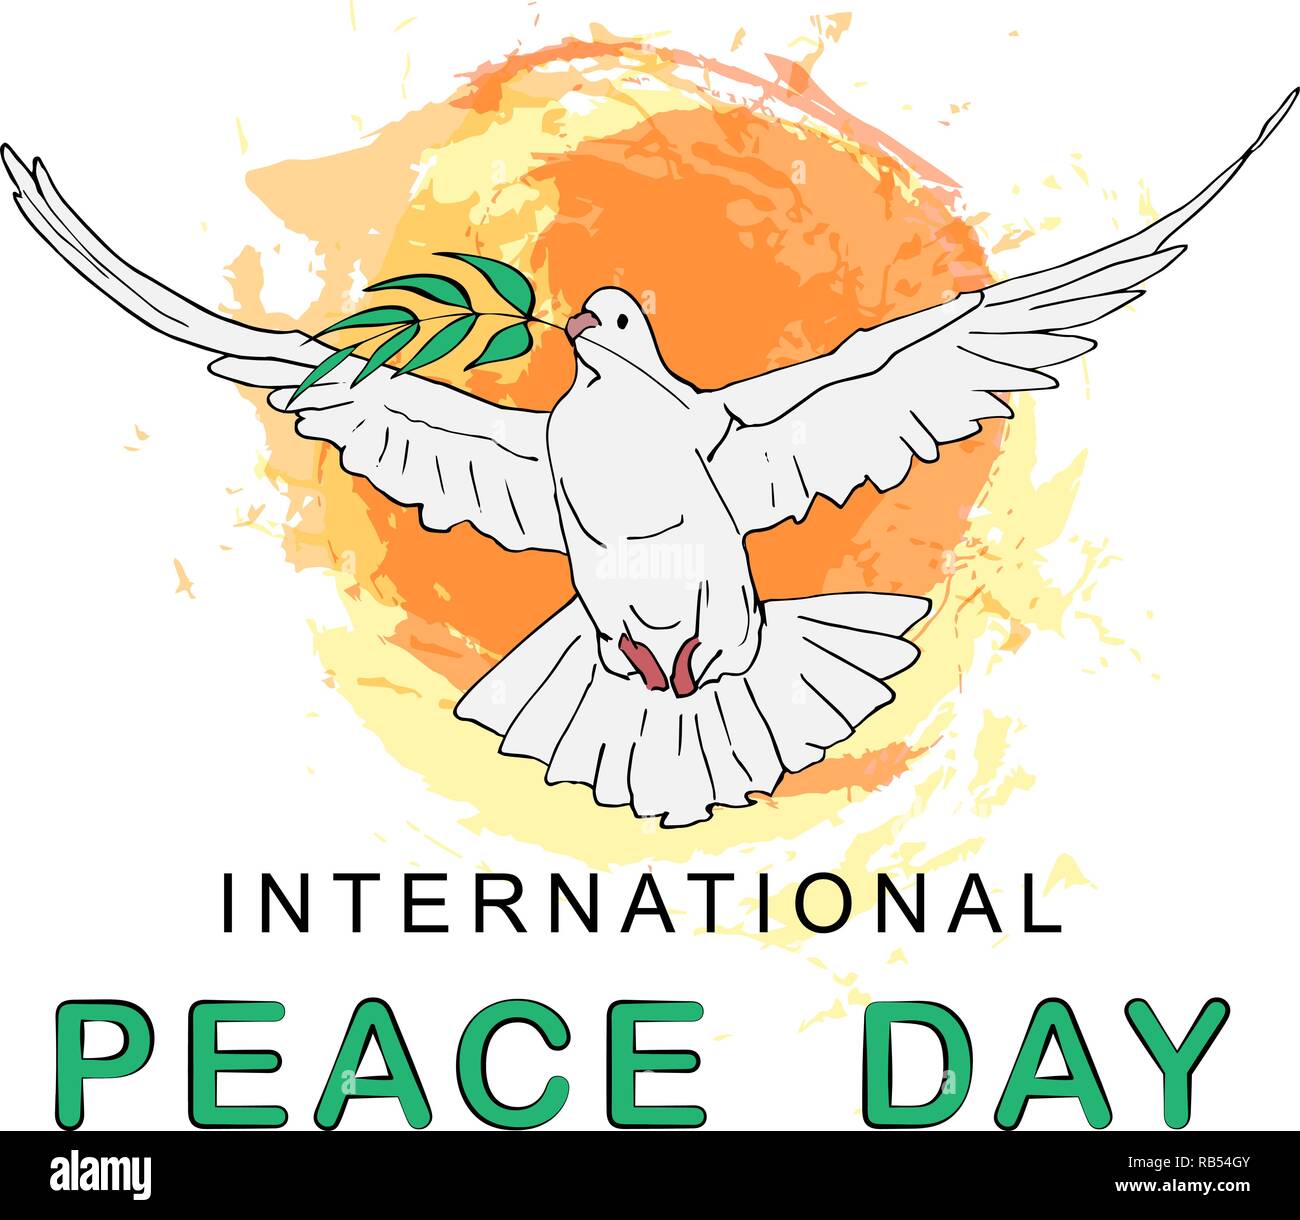 Internationaler Tag des Friedens. Friedens Taube mit Ölzweig für  Internationalen Frieden Tag Plakat. Poster oder Banner Template Design.  Vector Illustration Stock-Vektorgrafik - Alamy